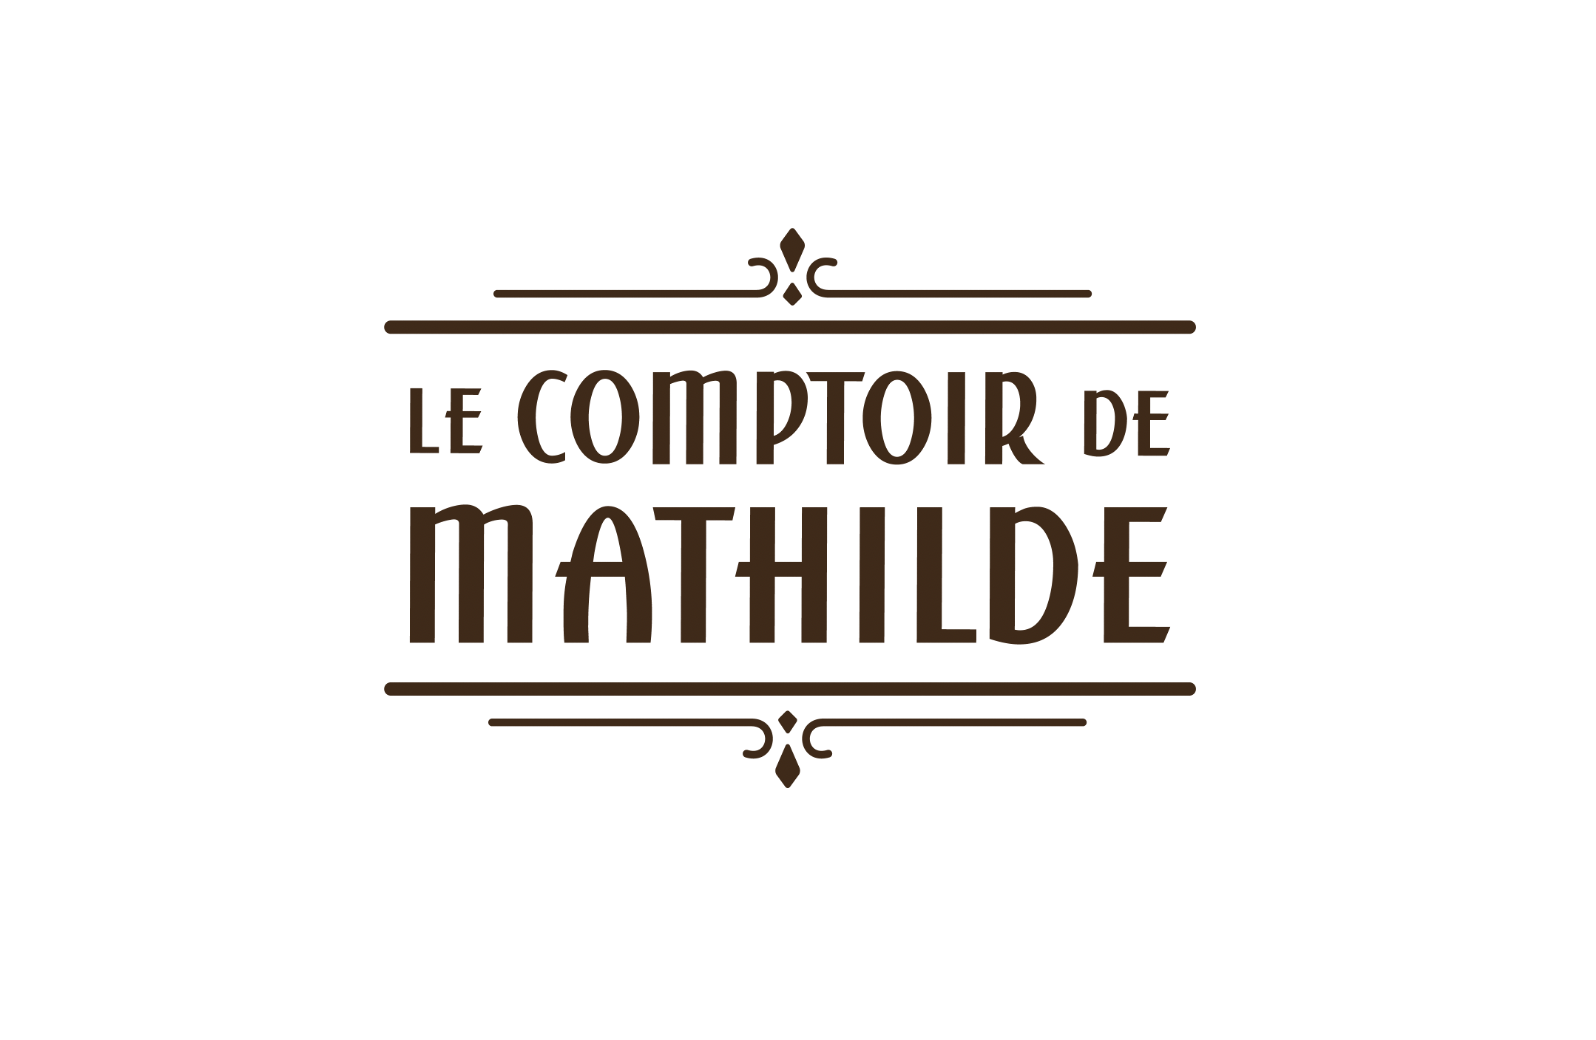 Le Comptoir de Mathilde - Centre Commercial Carrefour Nevers Marzy